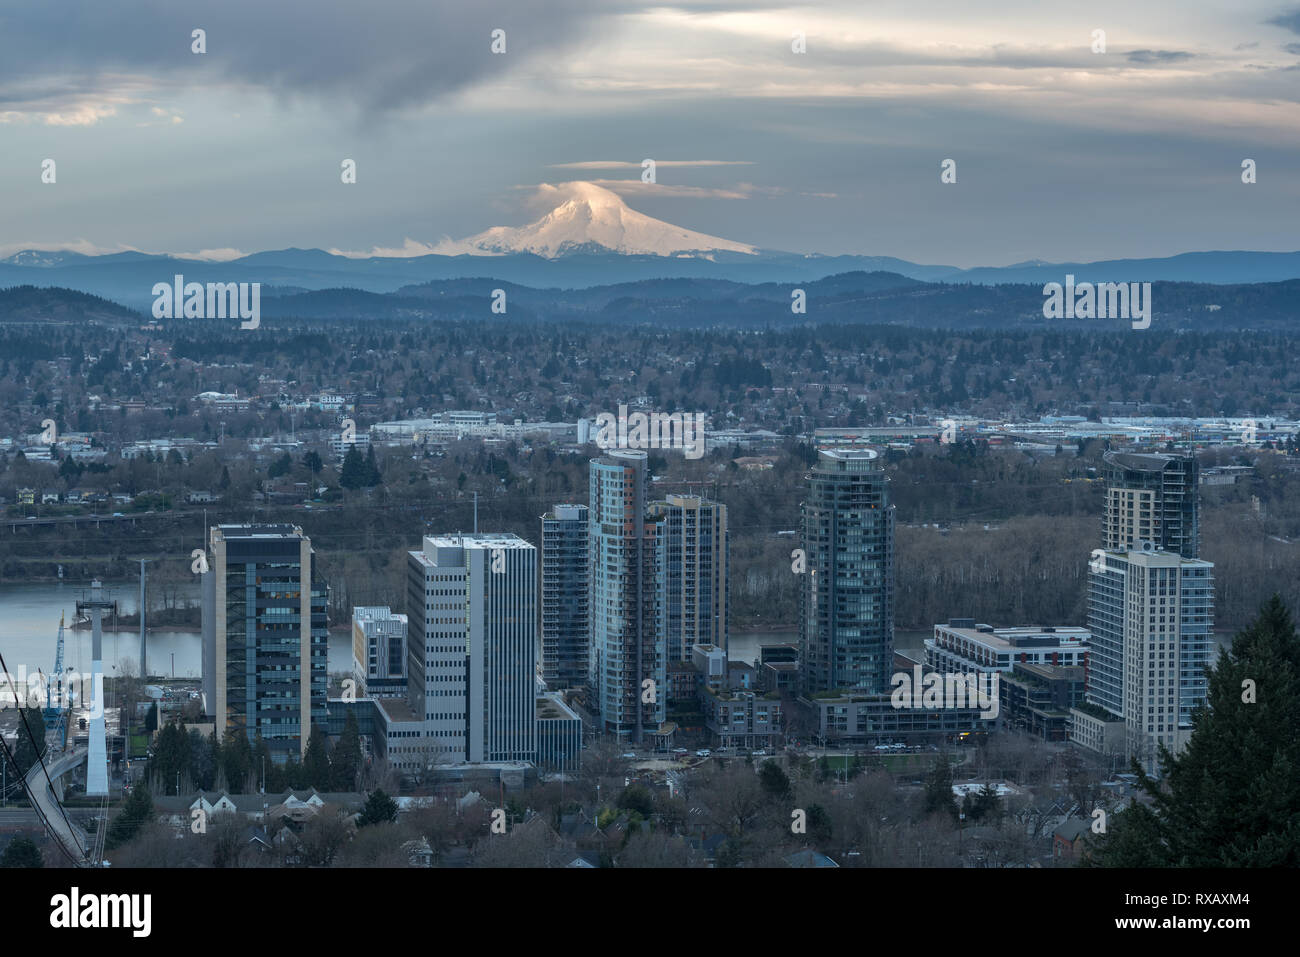 Mt. Le capot et le sud de Portland Waterfront district, de l'Oregon. Banque D'Images